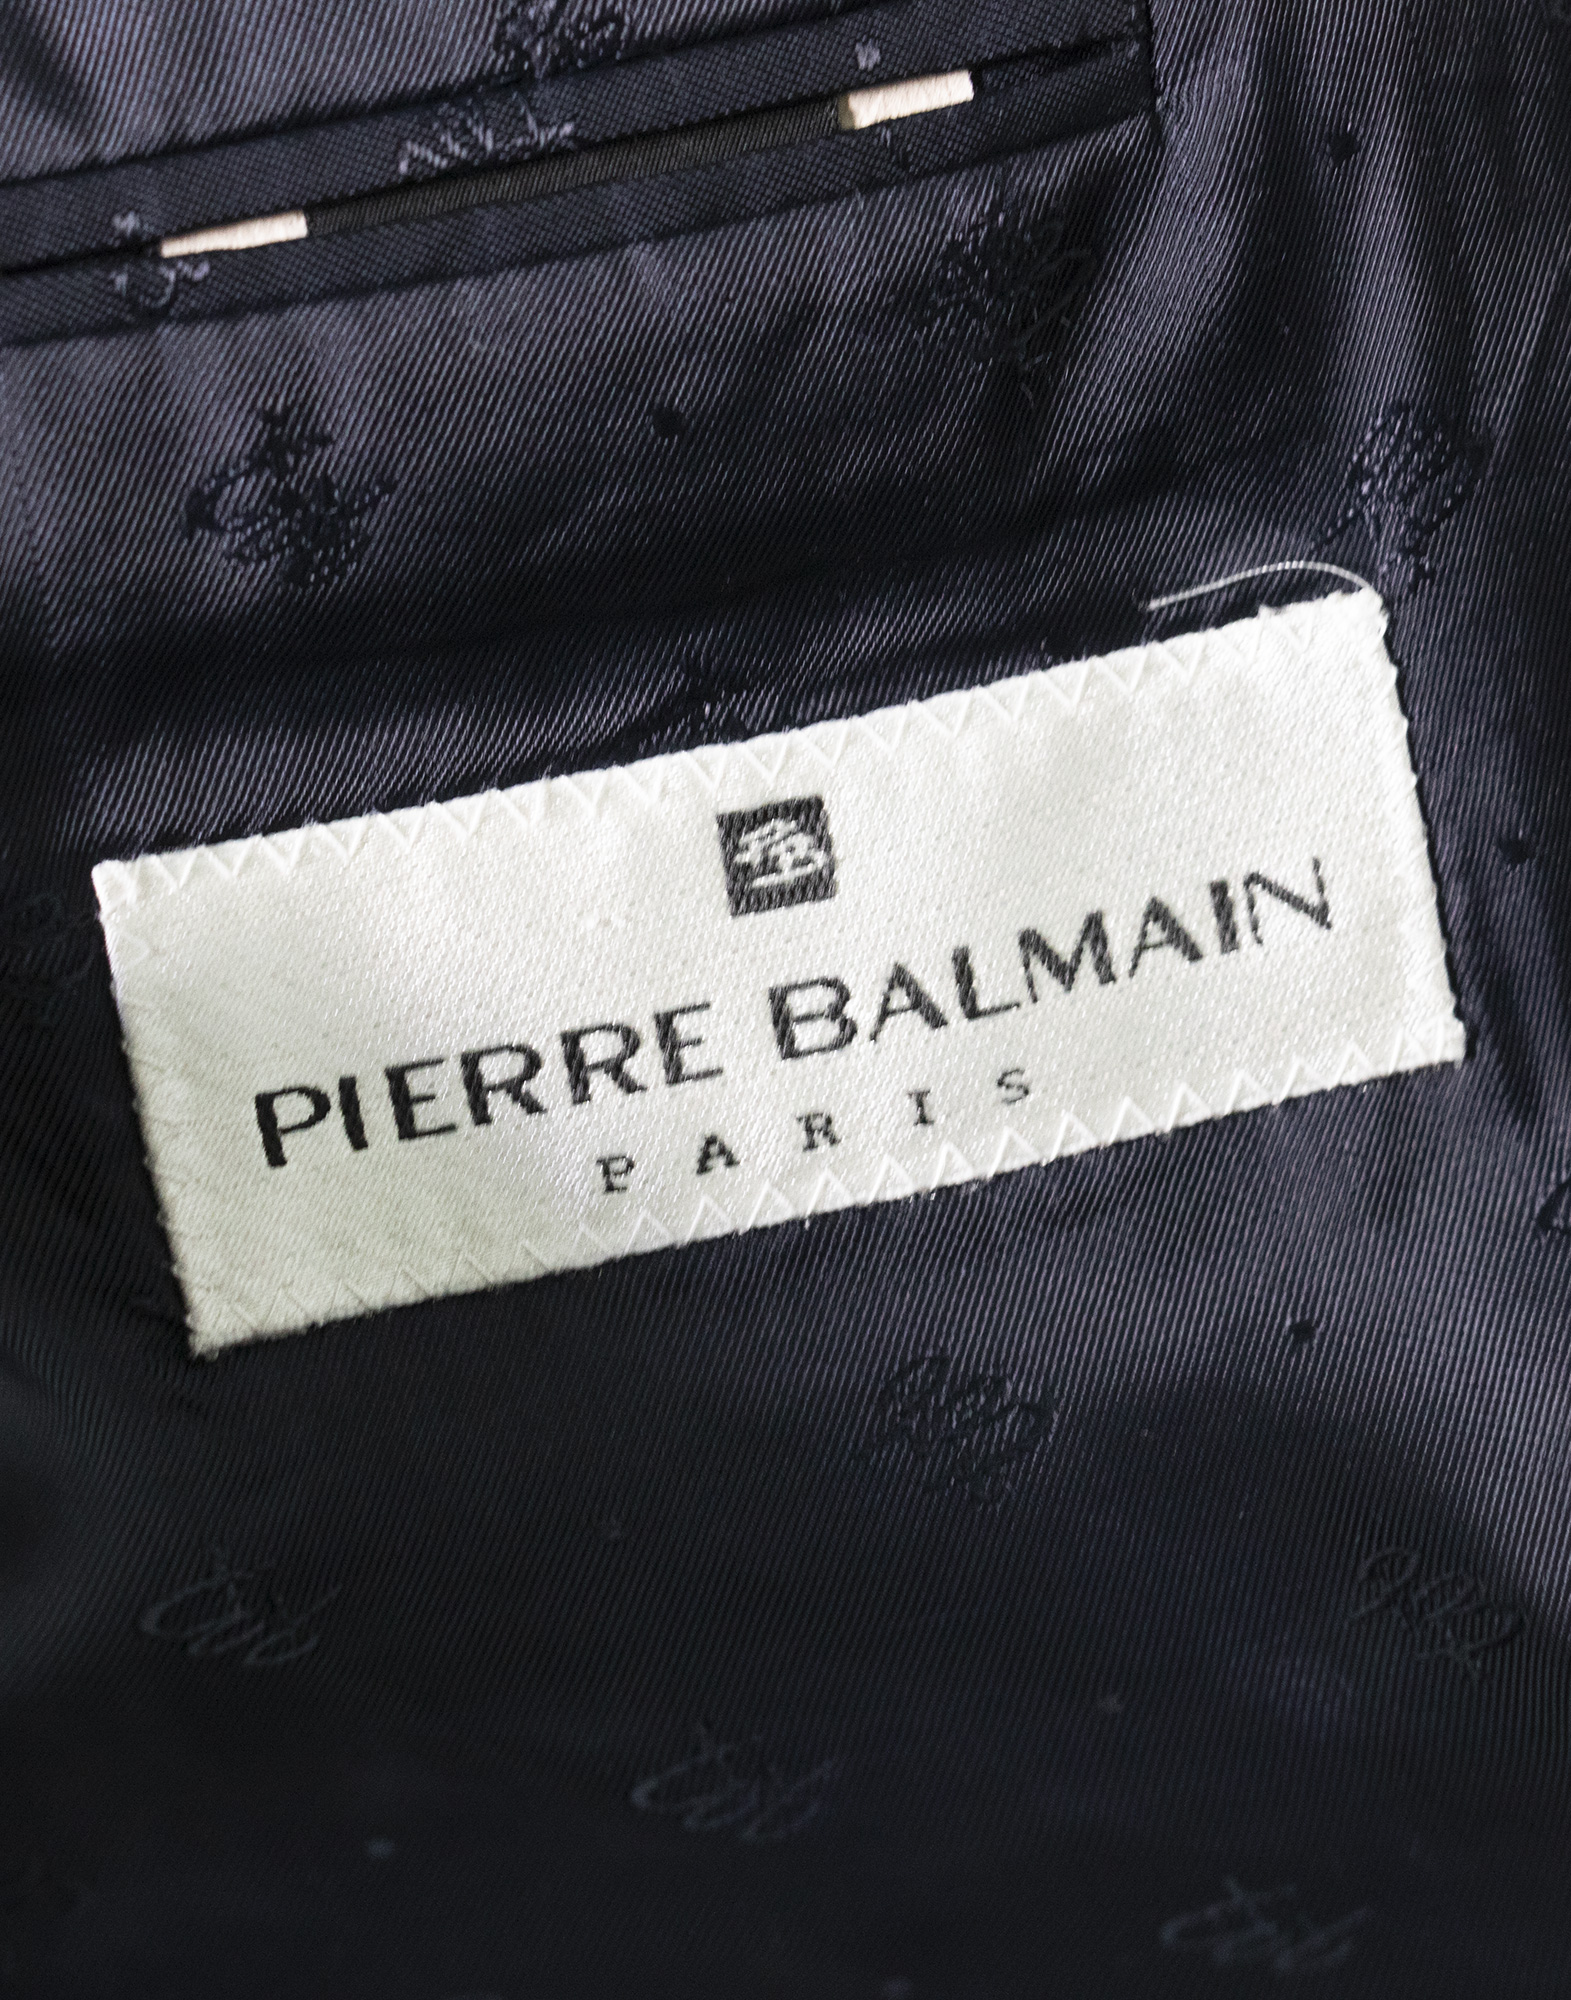 Pierre Balmain - Giacca doppiopetto in lana vergine